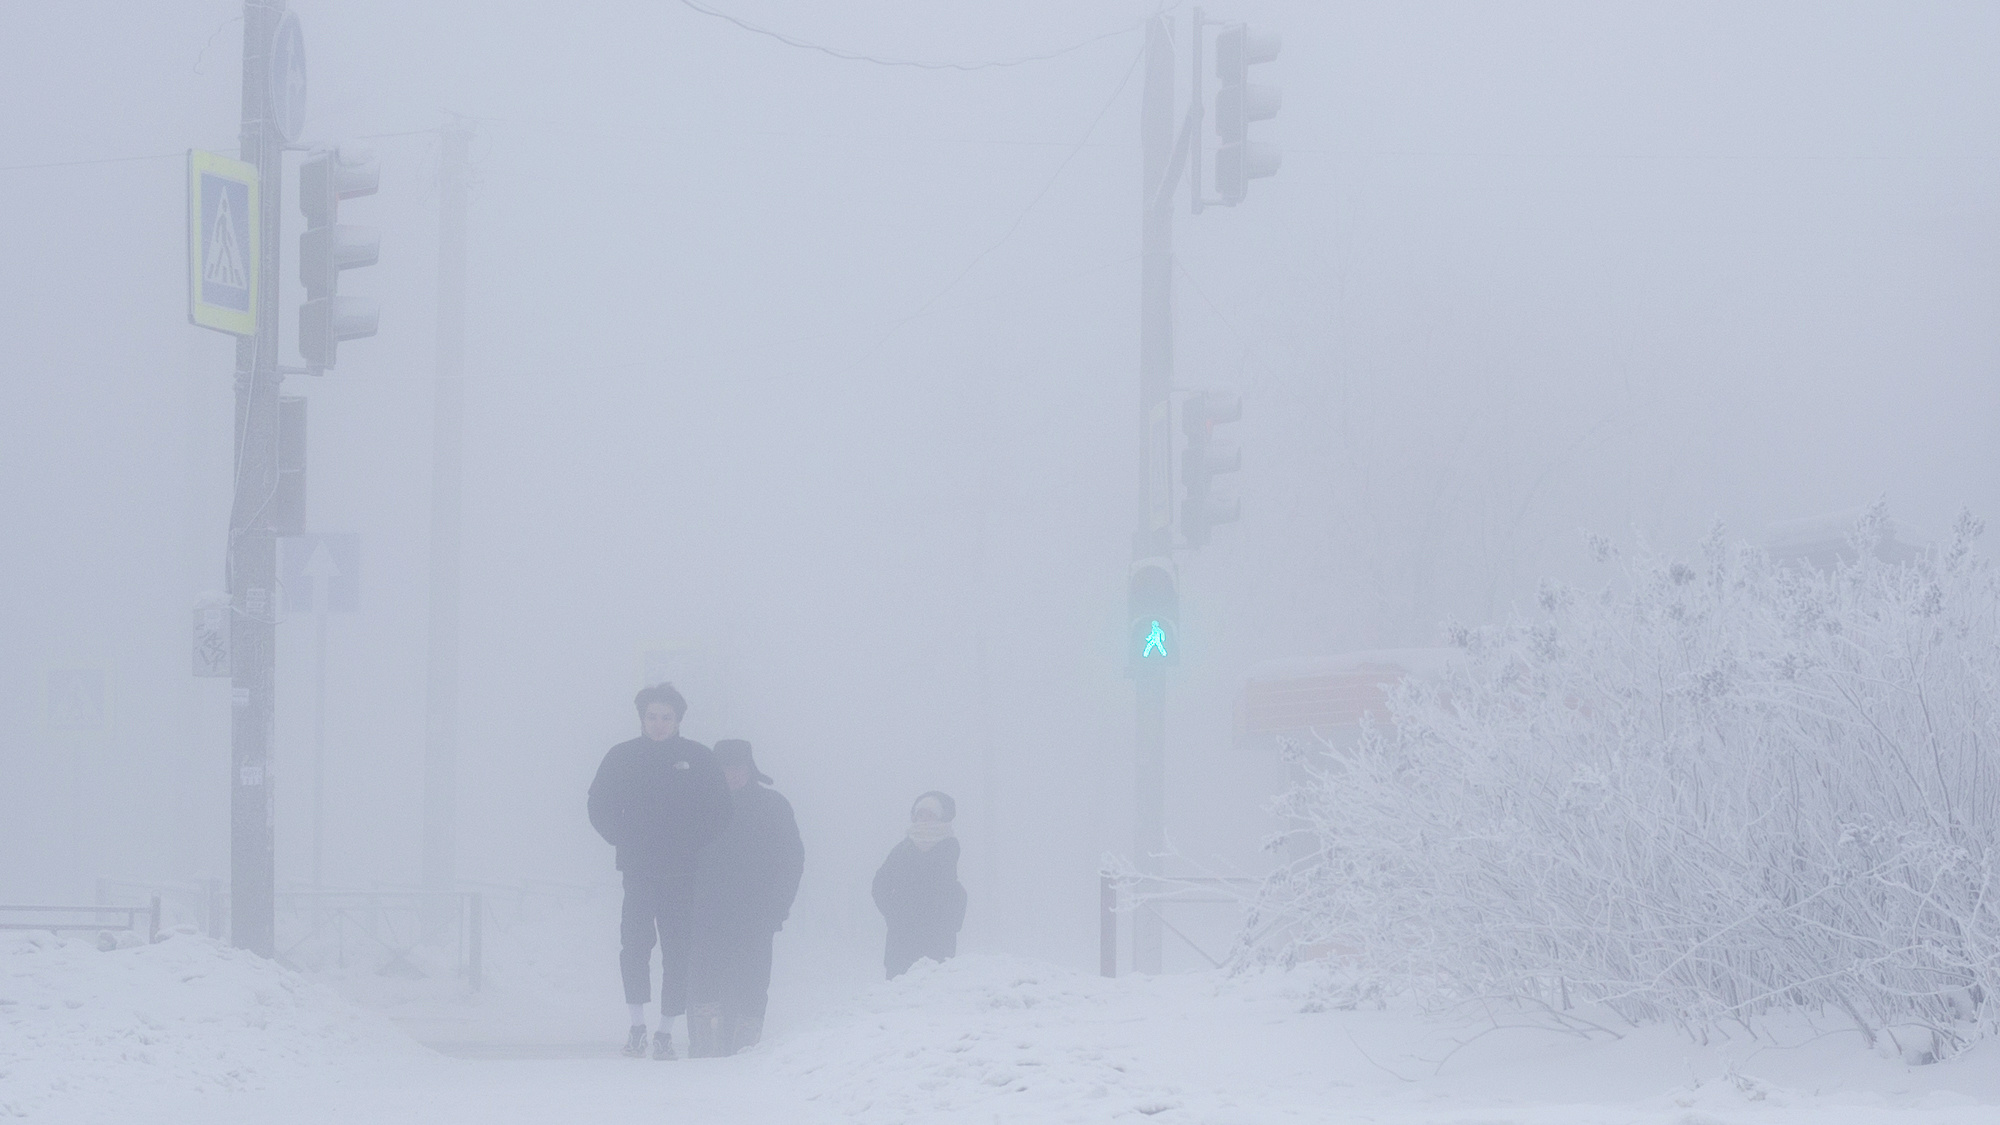 Просто лютый мороз. Очень холодный (и туманный) фоторепортаж с улиц Иркутска